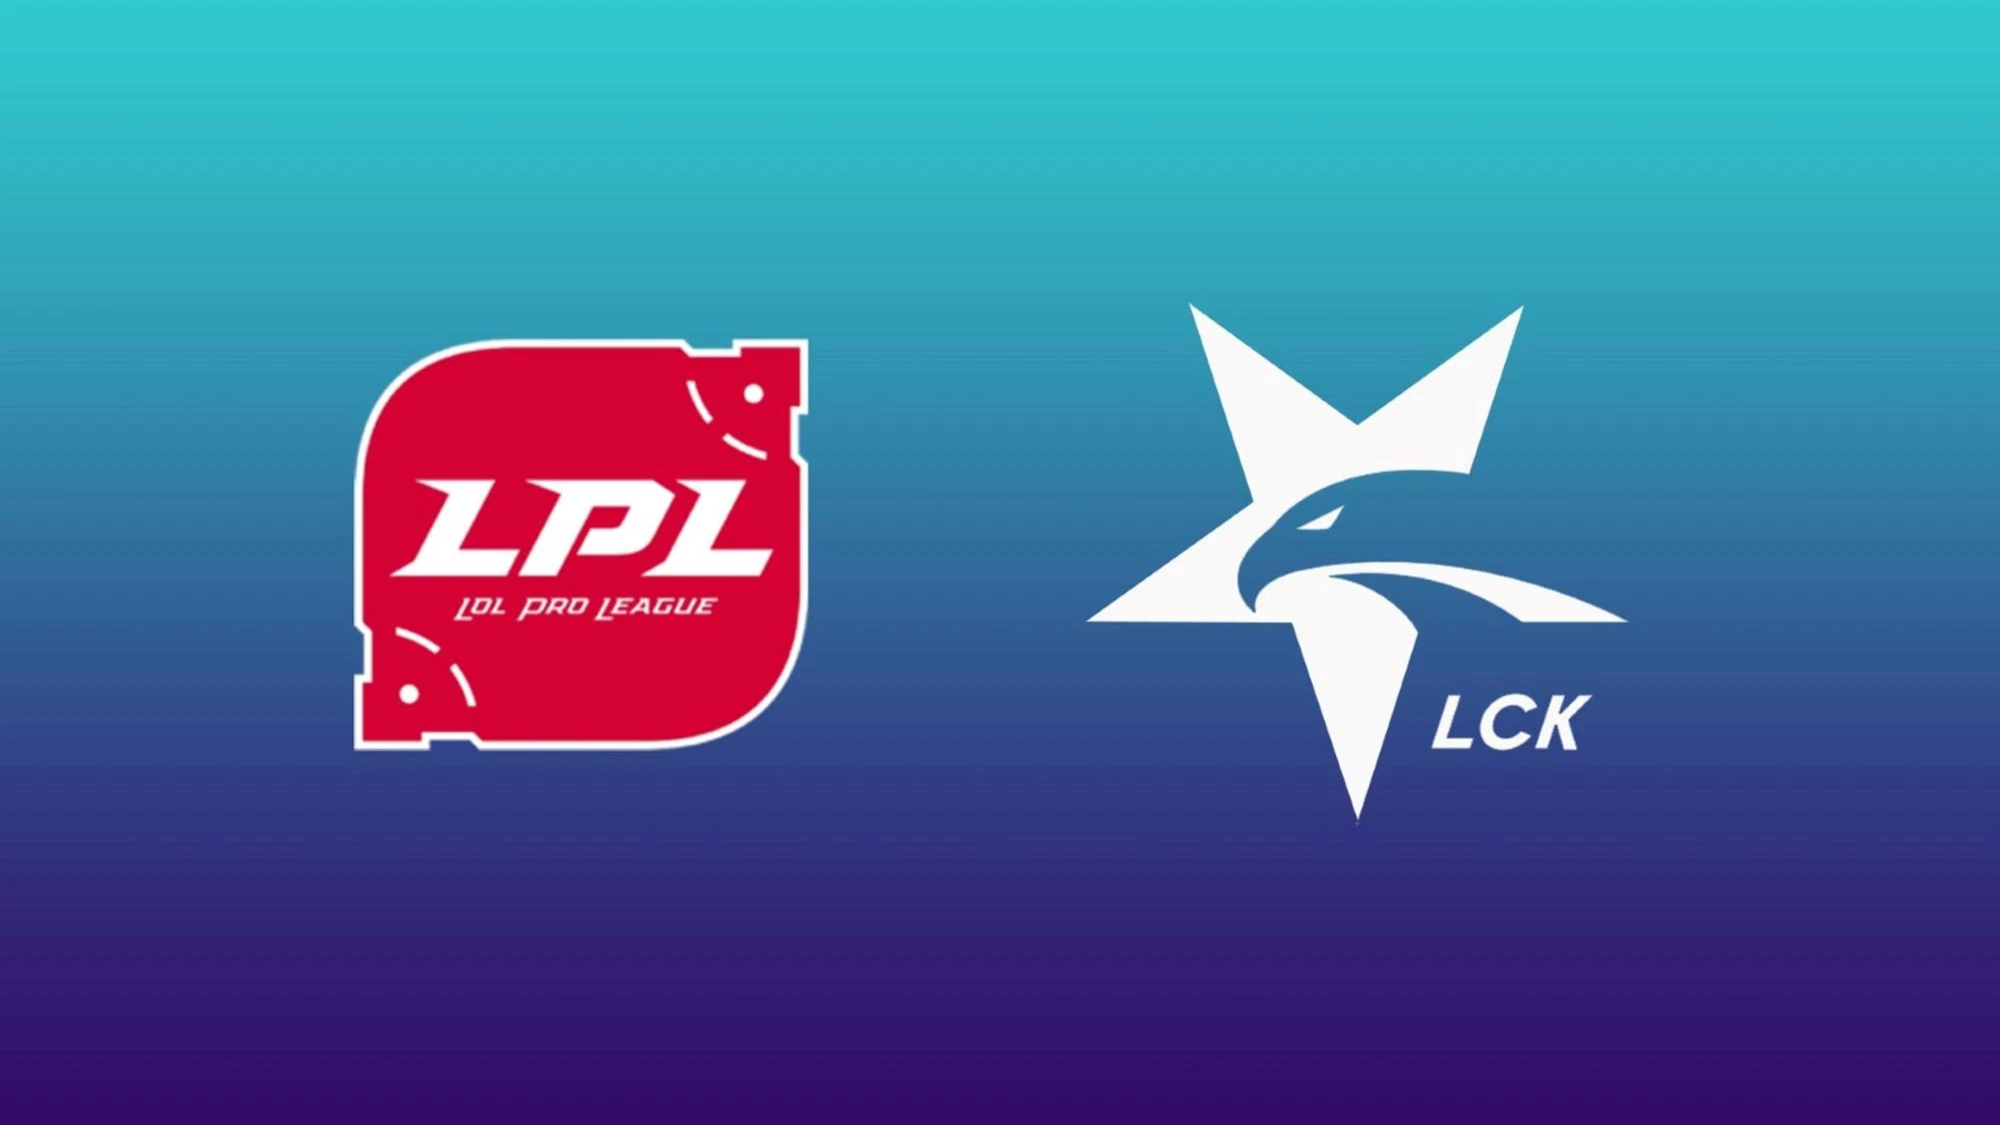 Là hai khu vực đối địch nhưng lại có nhiều tuyển thủ LCK chuyển sang LPL thi đấu